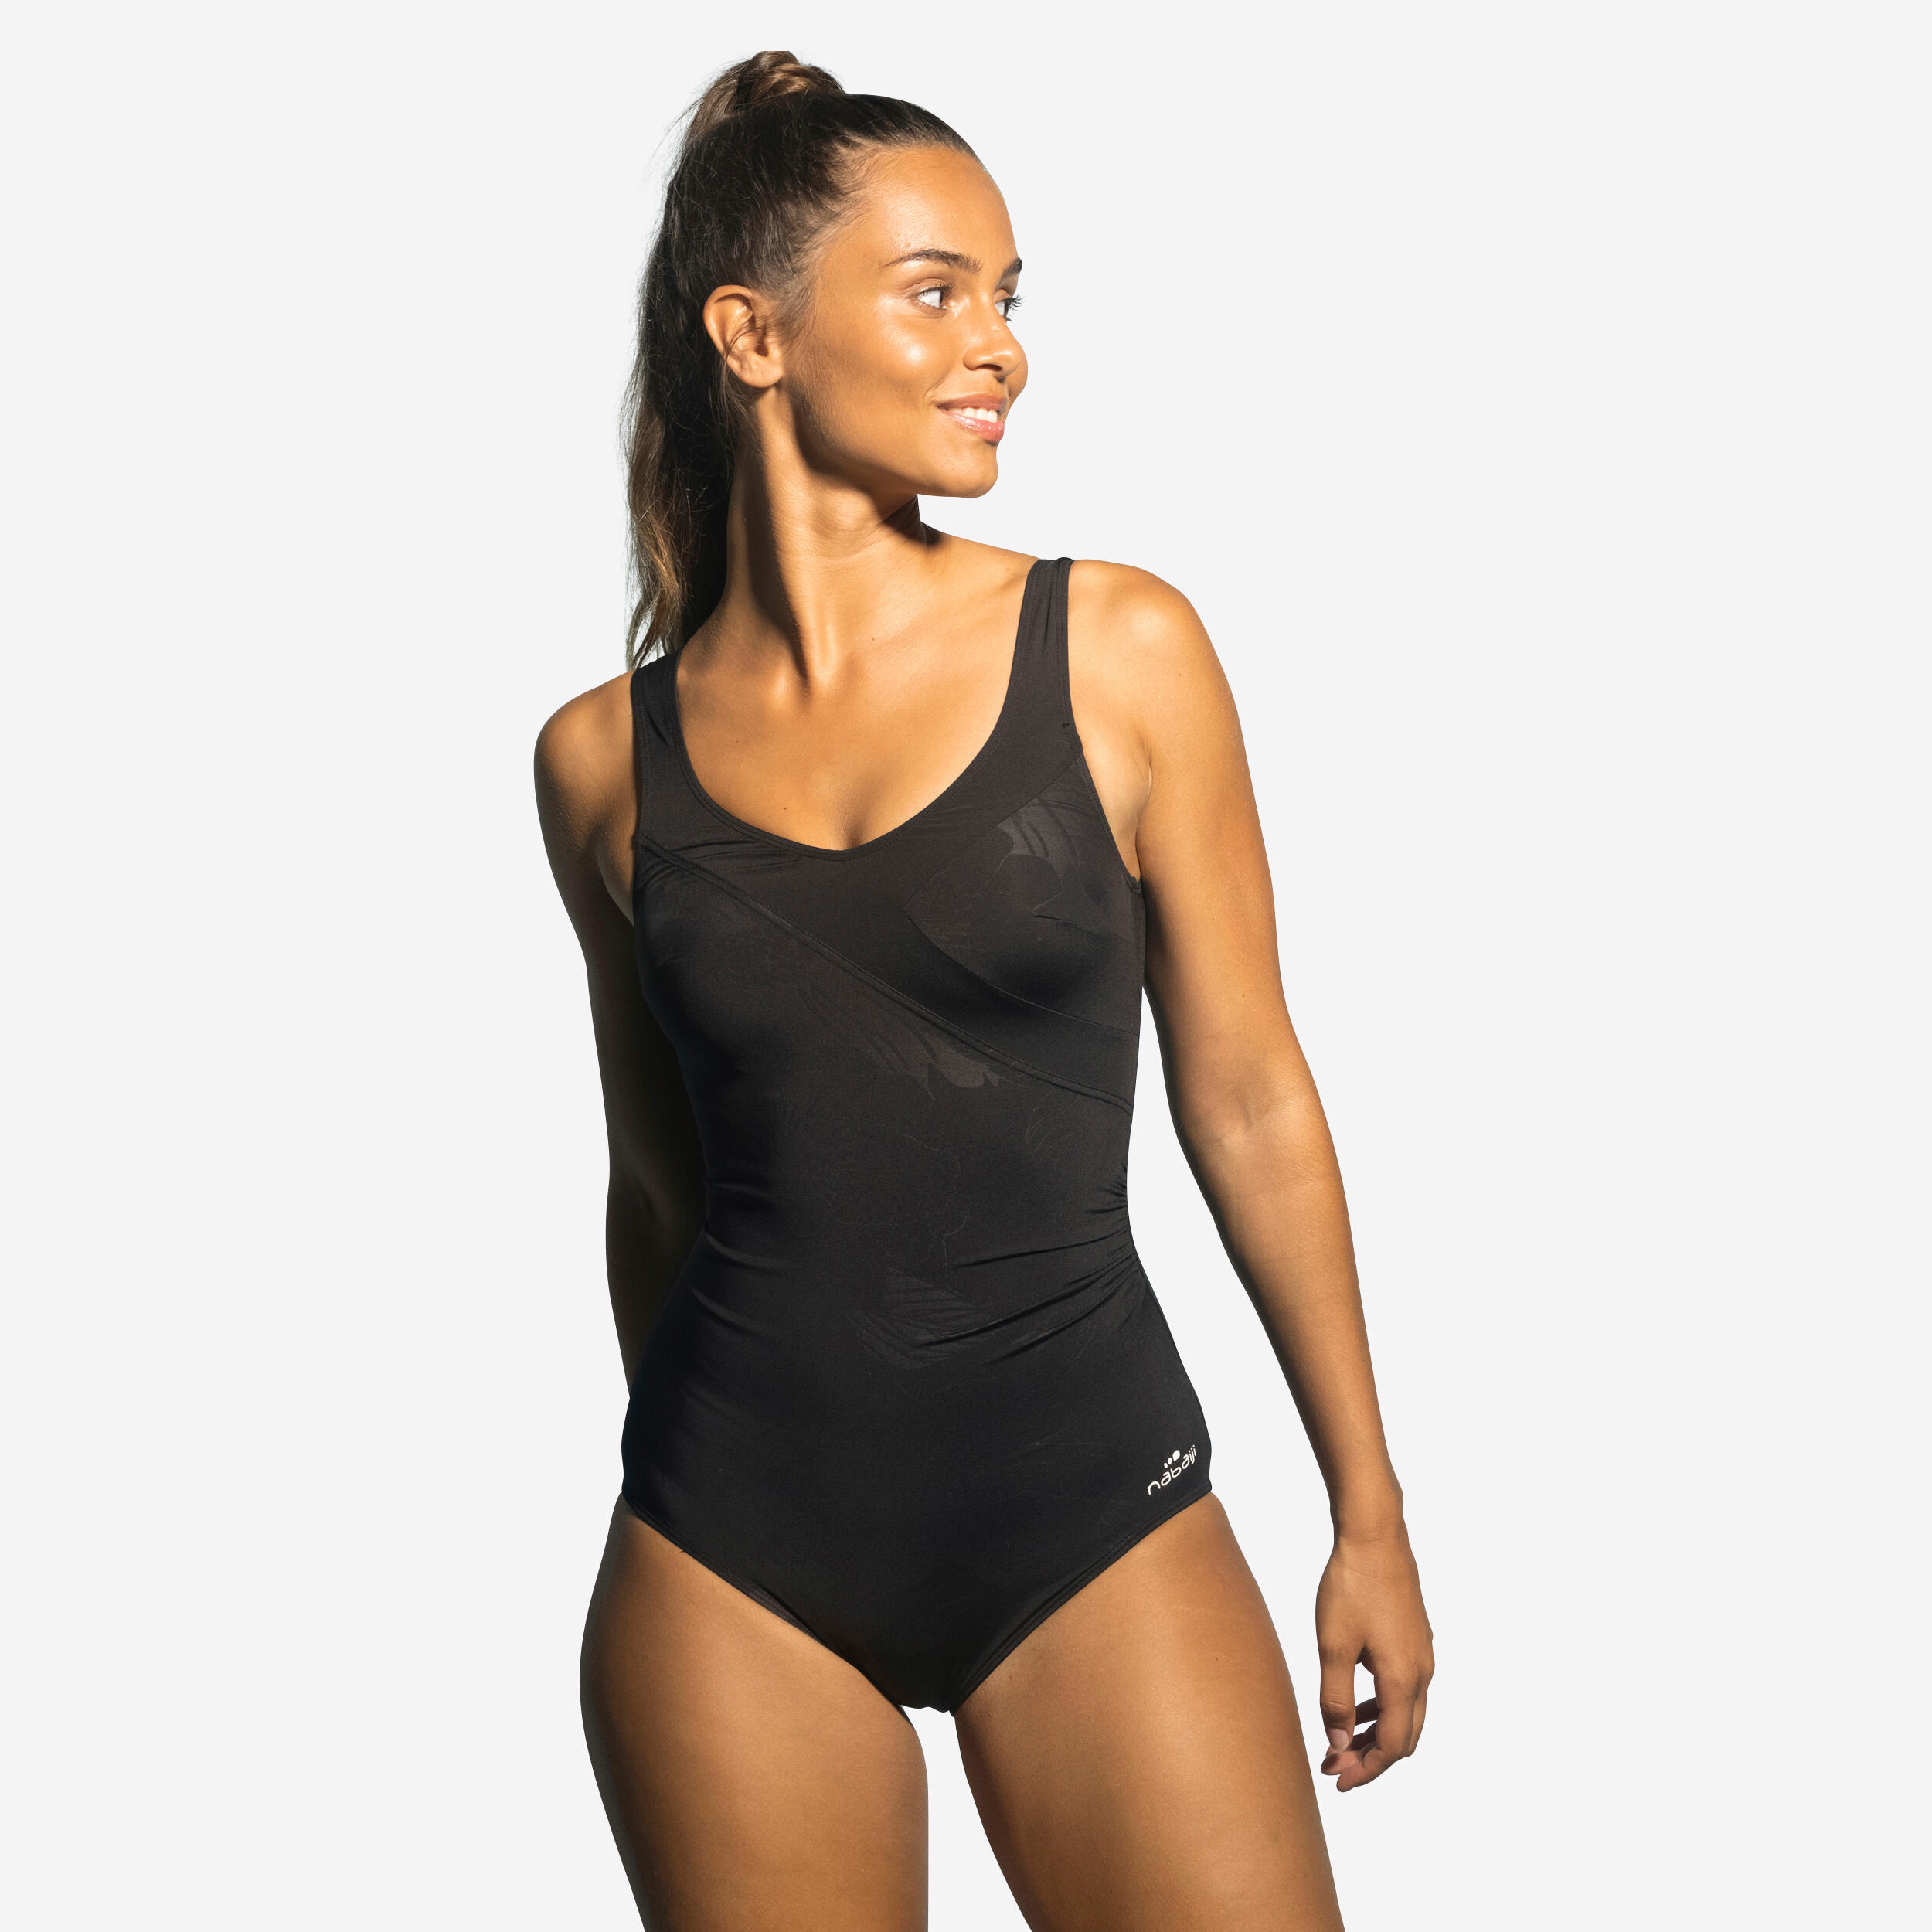 Women's Aquafitness 1-Piece Swimsuit - Karly Black